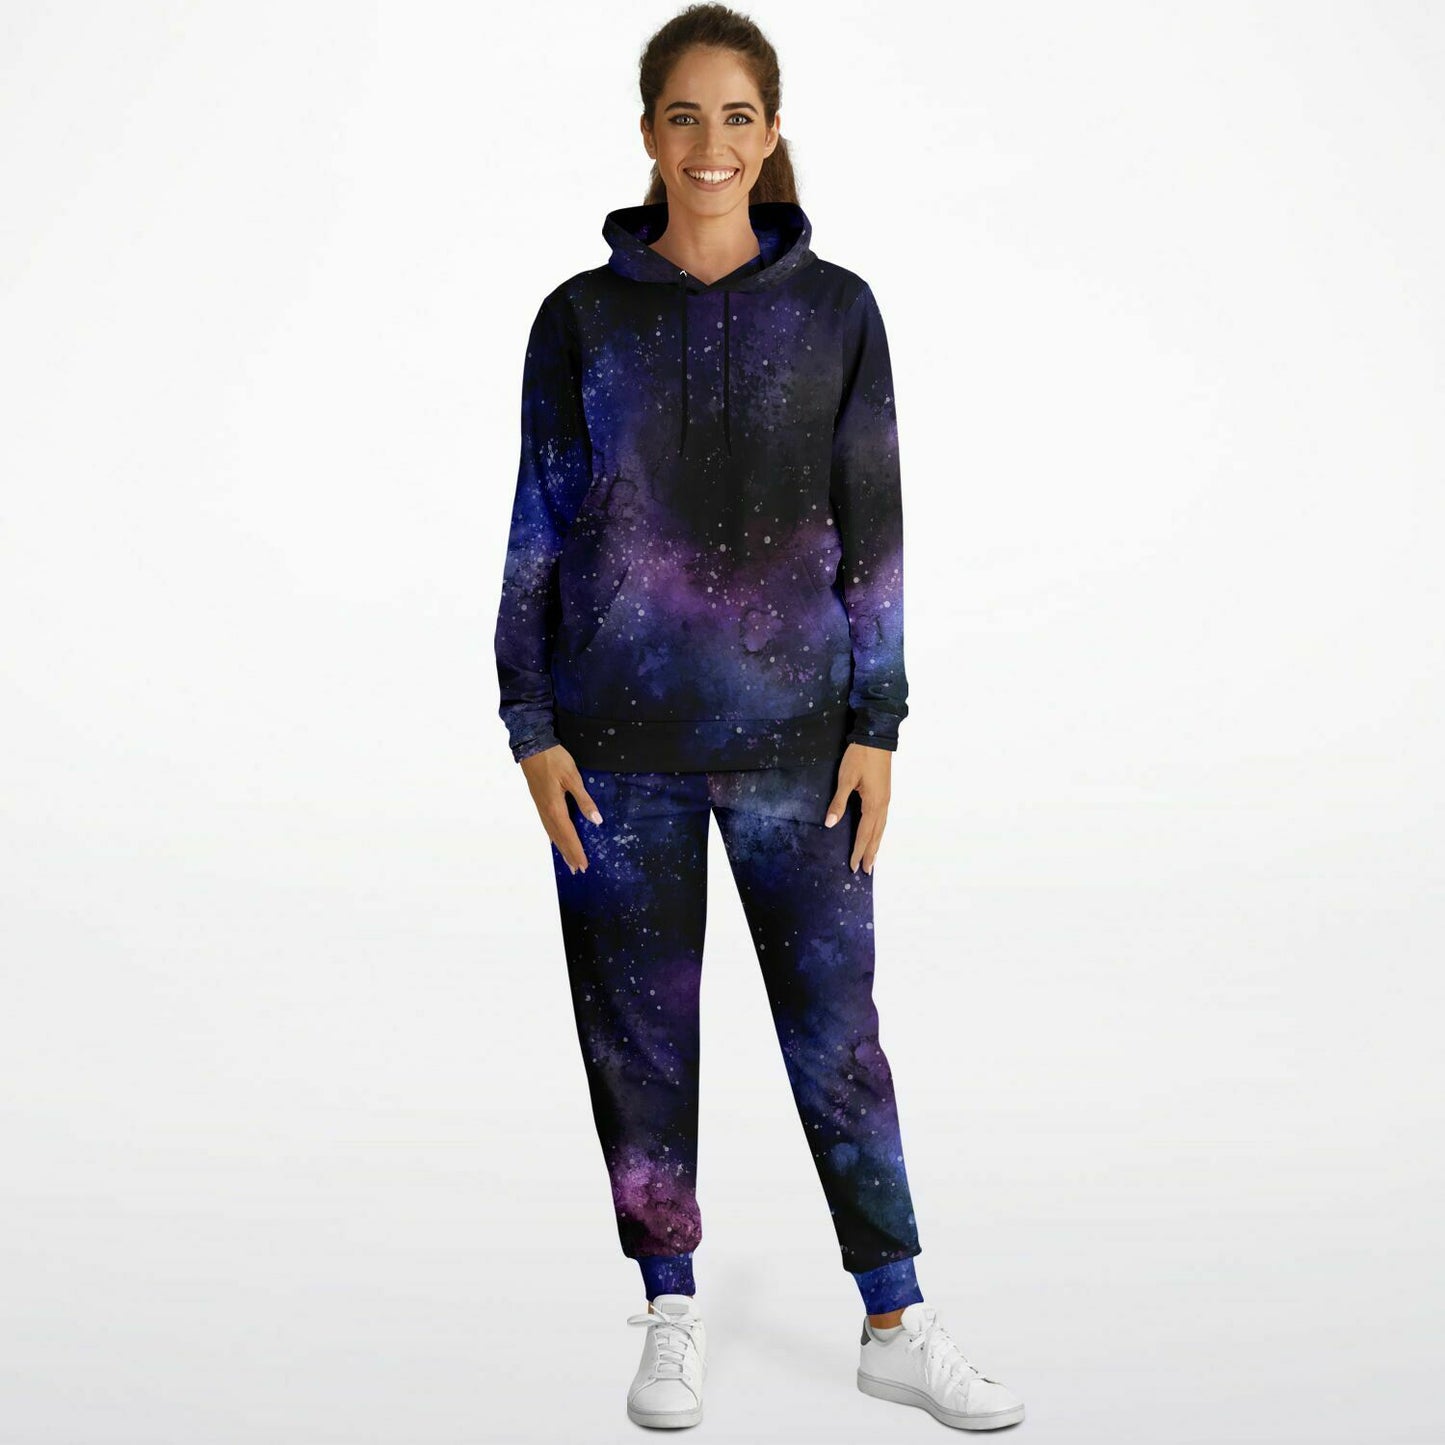 Galaxy Hoodie Jogger Sweatsuit Set, Stars Universe Hooded Sweatshirt Sweatpants Women Men Cotton Matching Plus Size Sweats